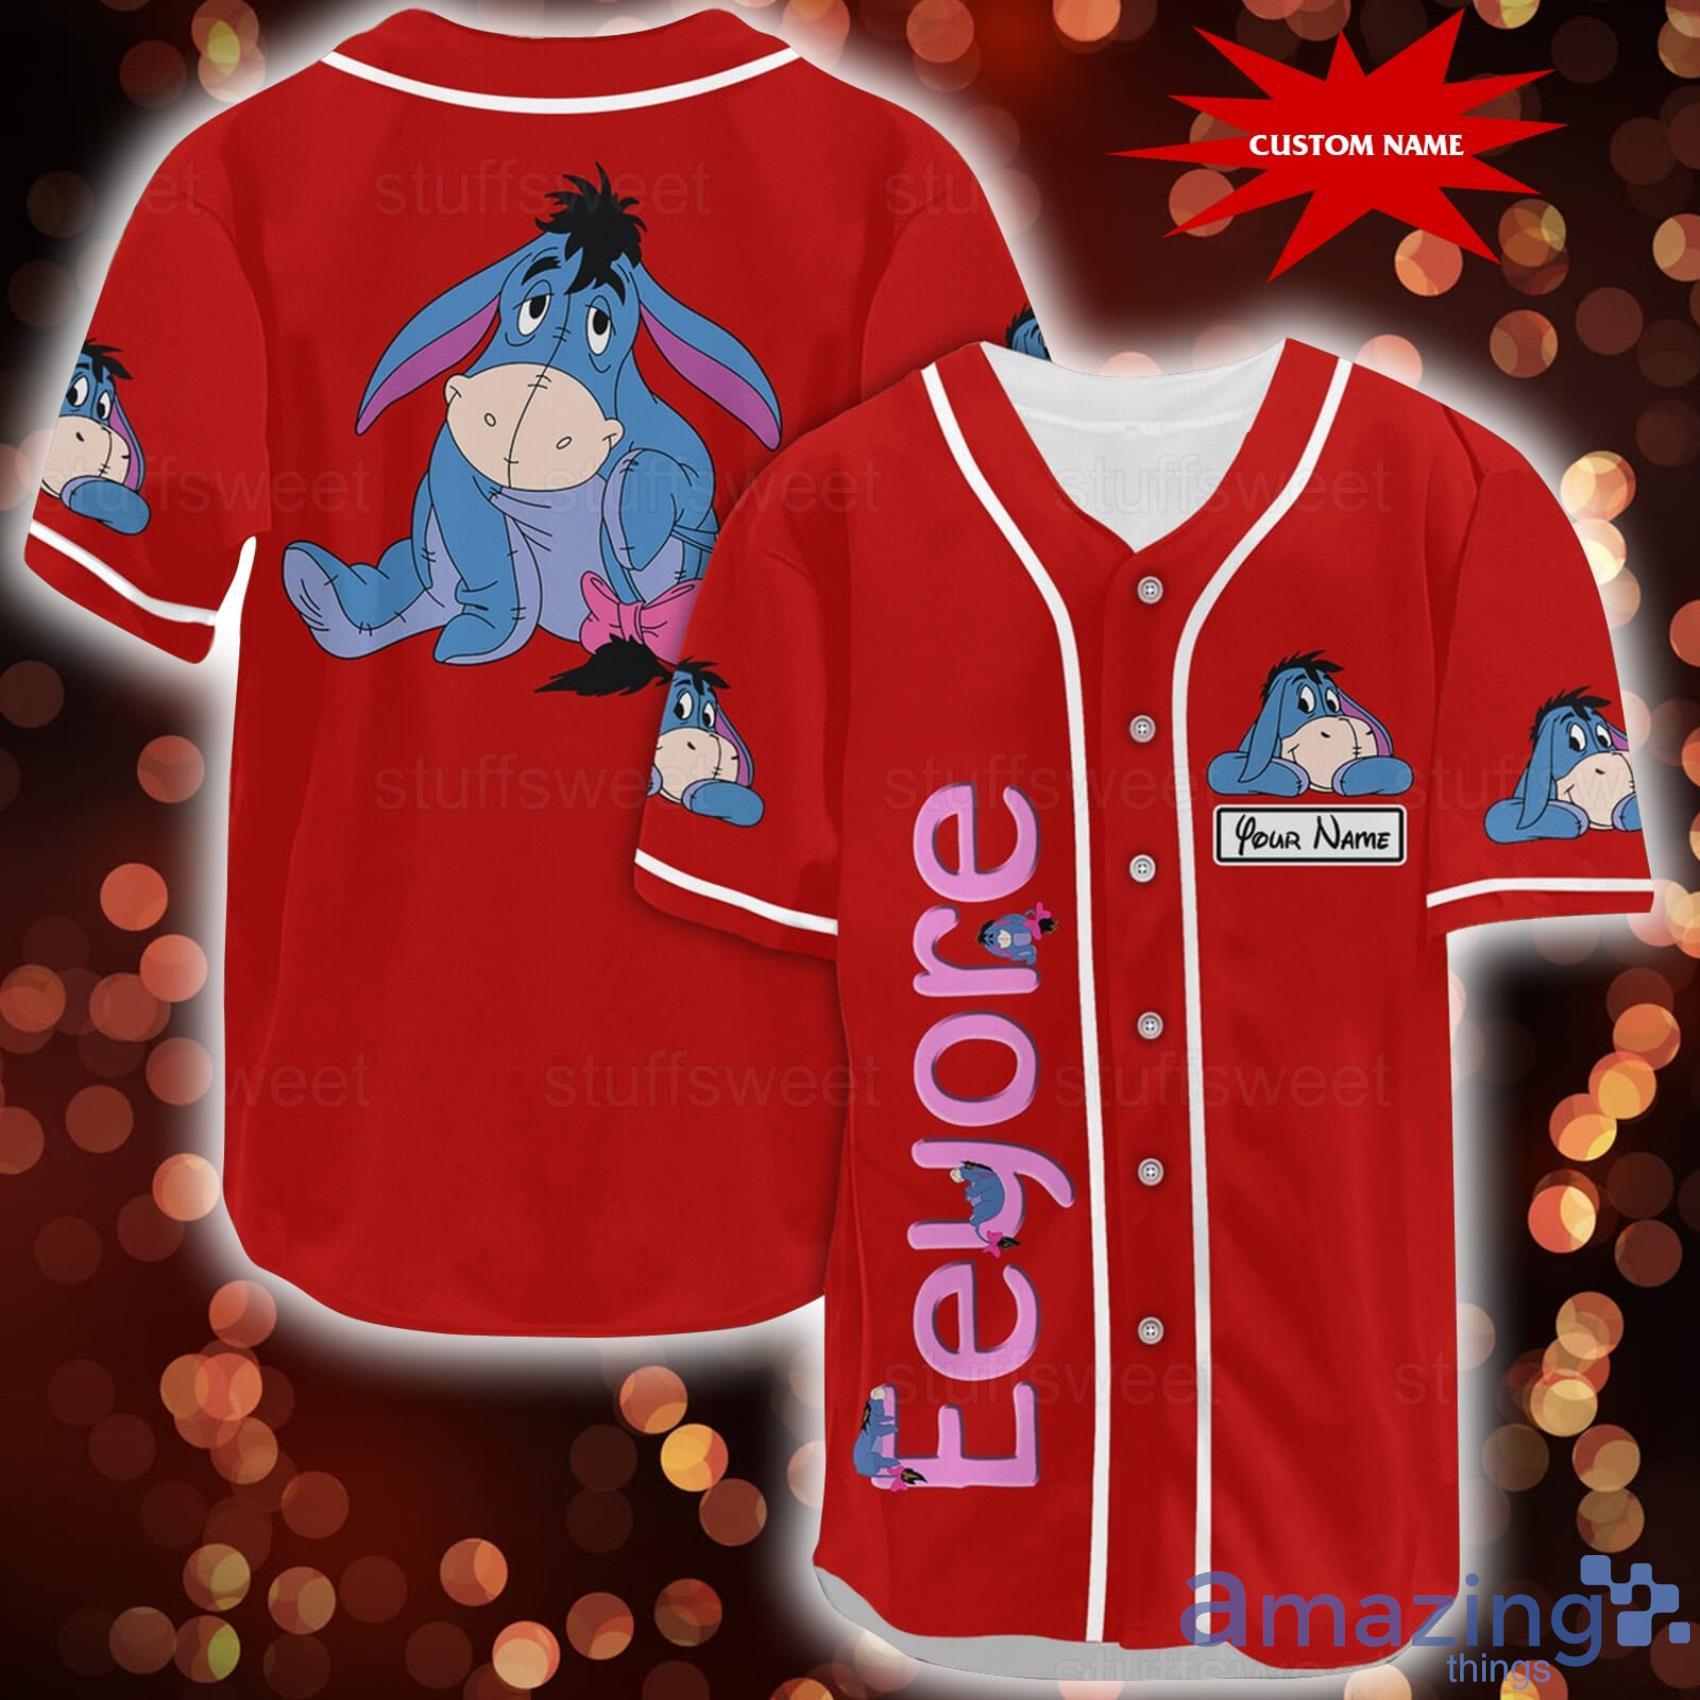 Custom Name Eeyore Baseball Jersey